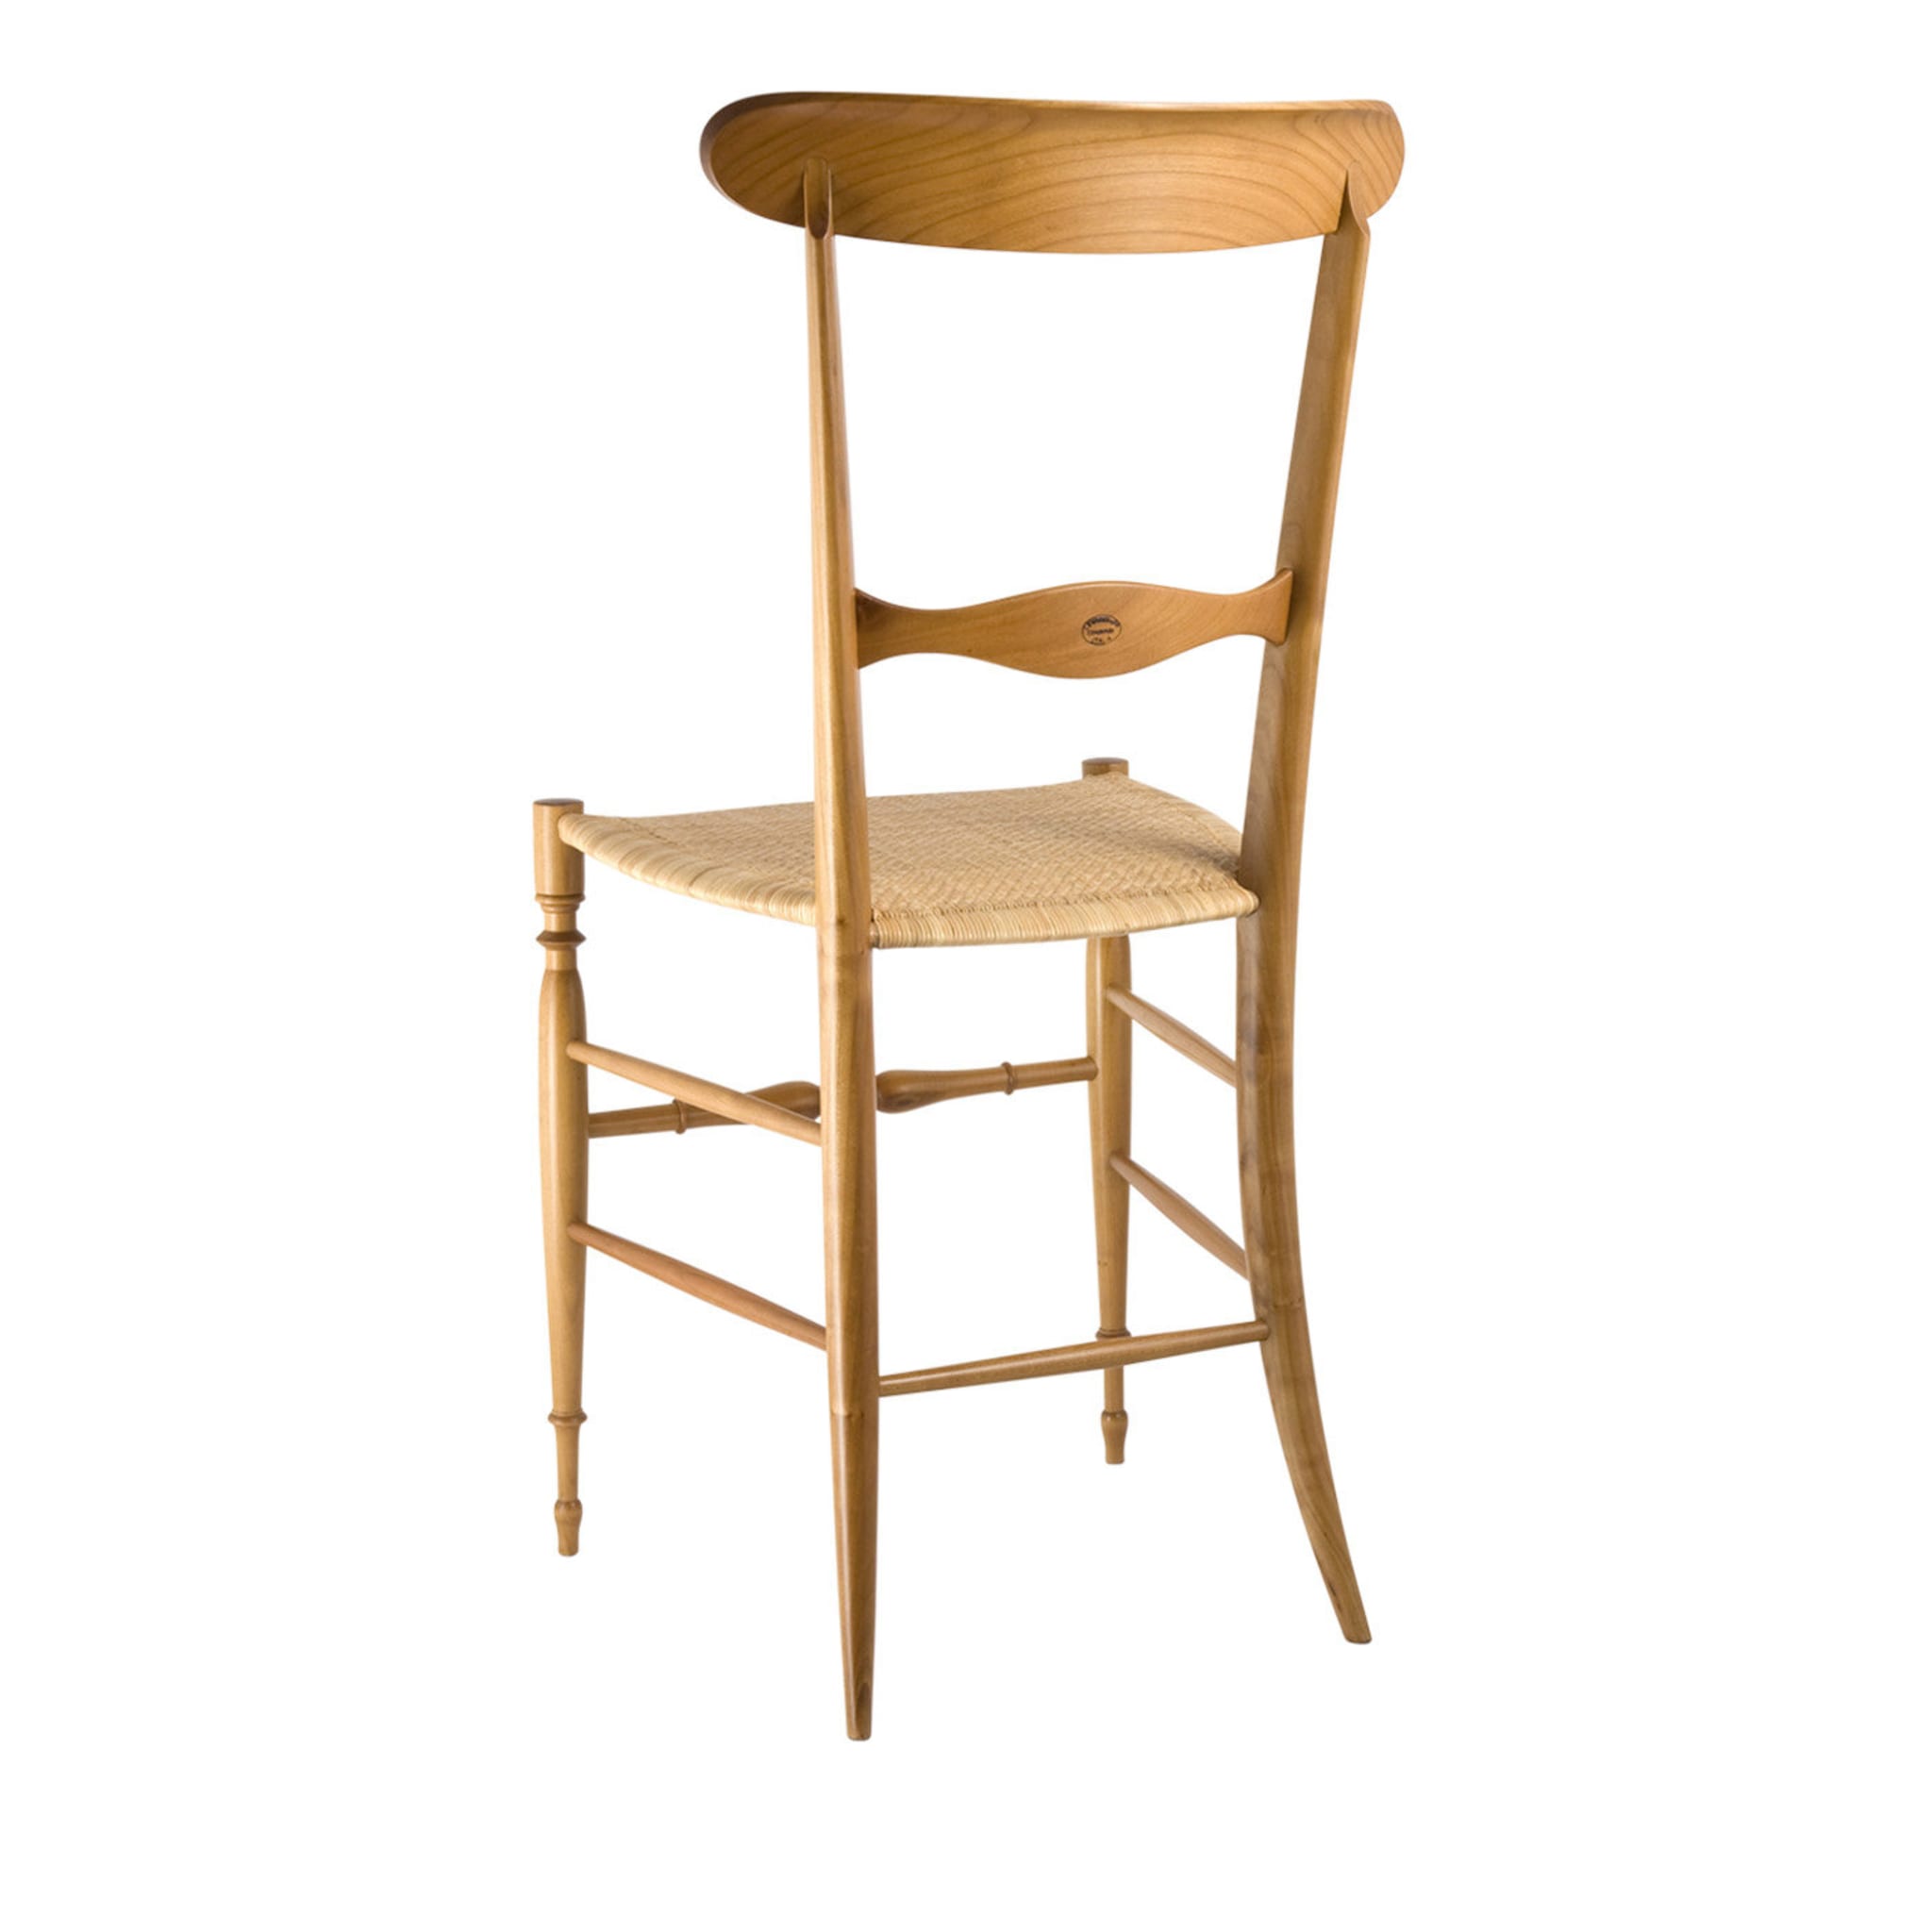 Campanino Classica Cherry Wood Chair - Alternative view 1